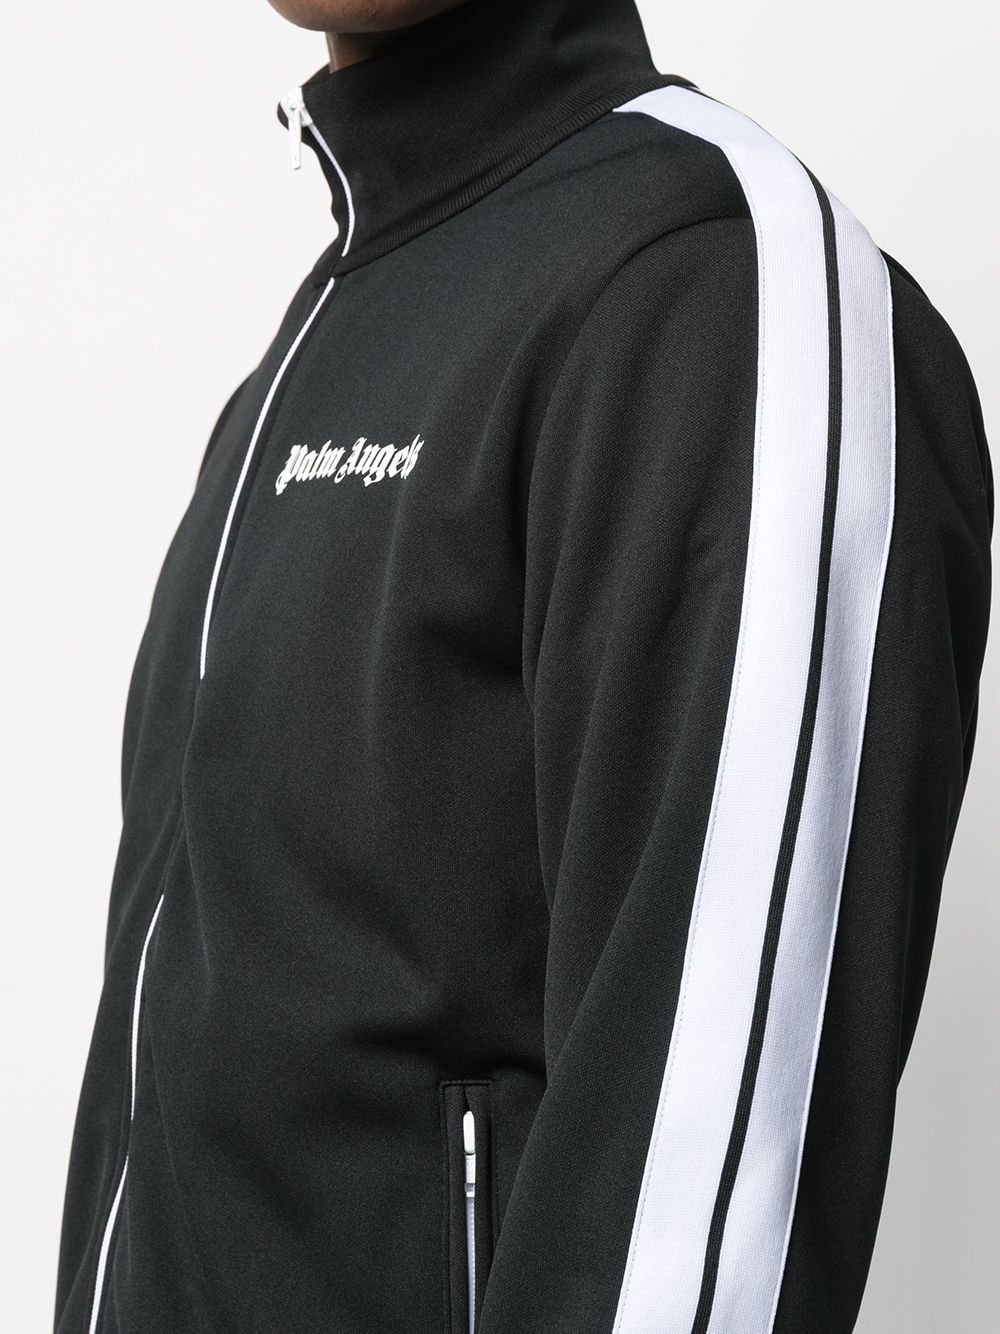 PALM ANGELS classic track jacket black/white - Maison De Fashion 